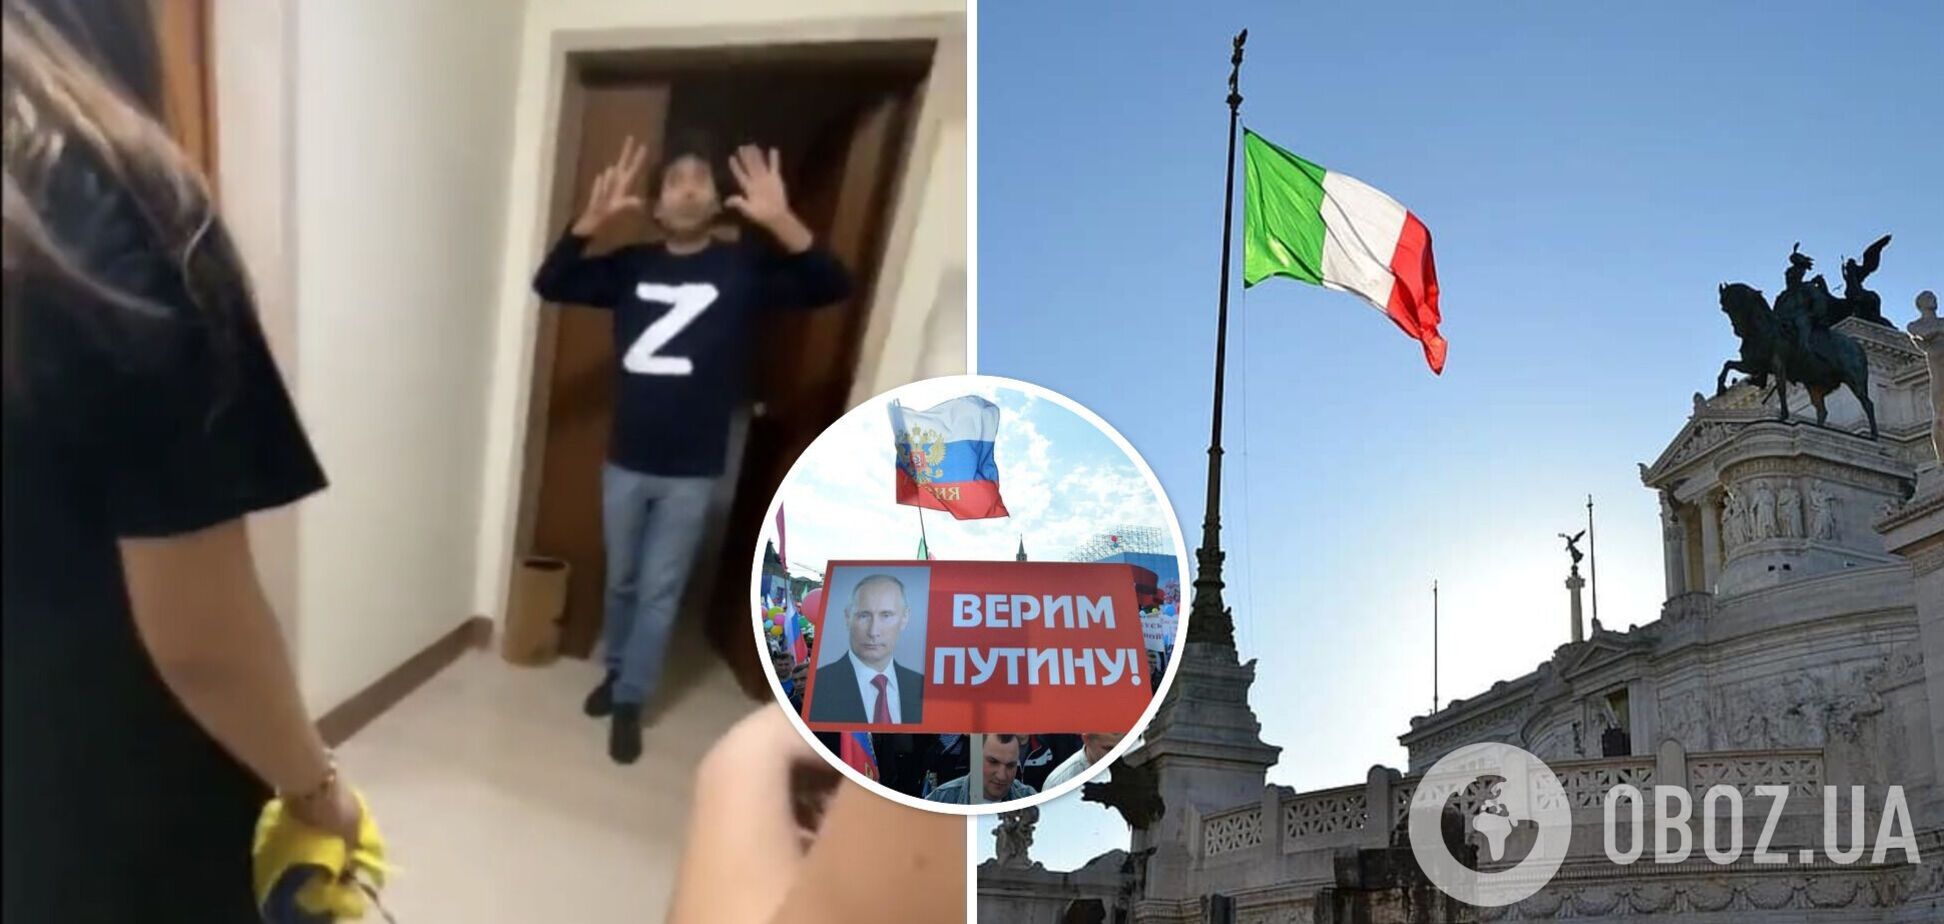 В Италии нашли фаната 'русского мира', вывесившего на балконе флаг РФ: с ним разобрались украинцы. Видео